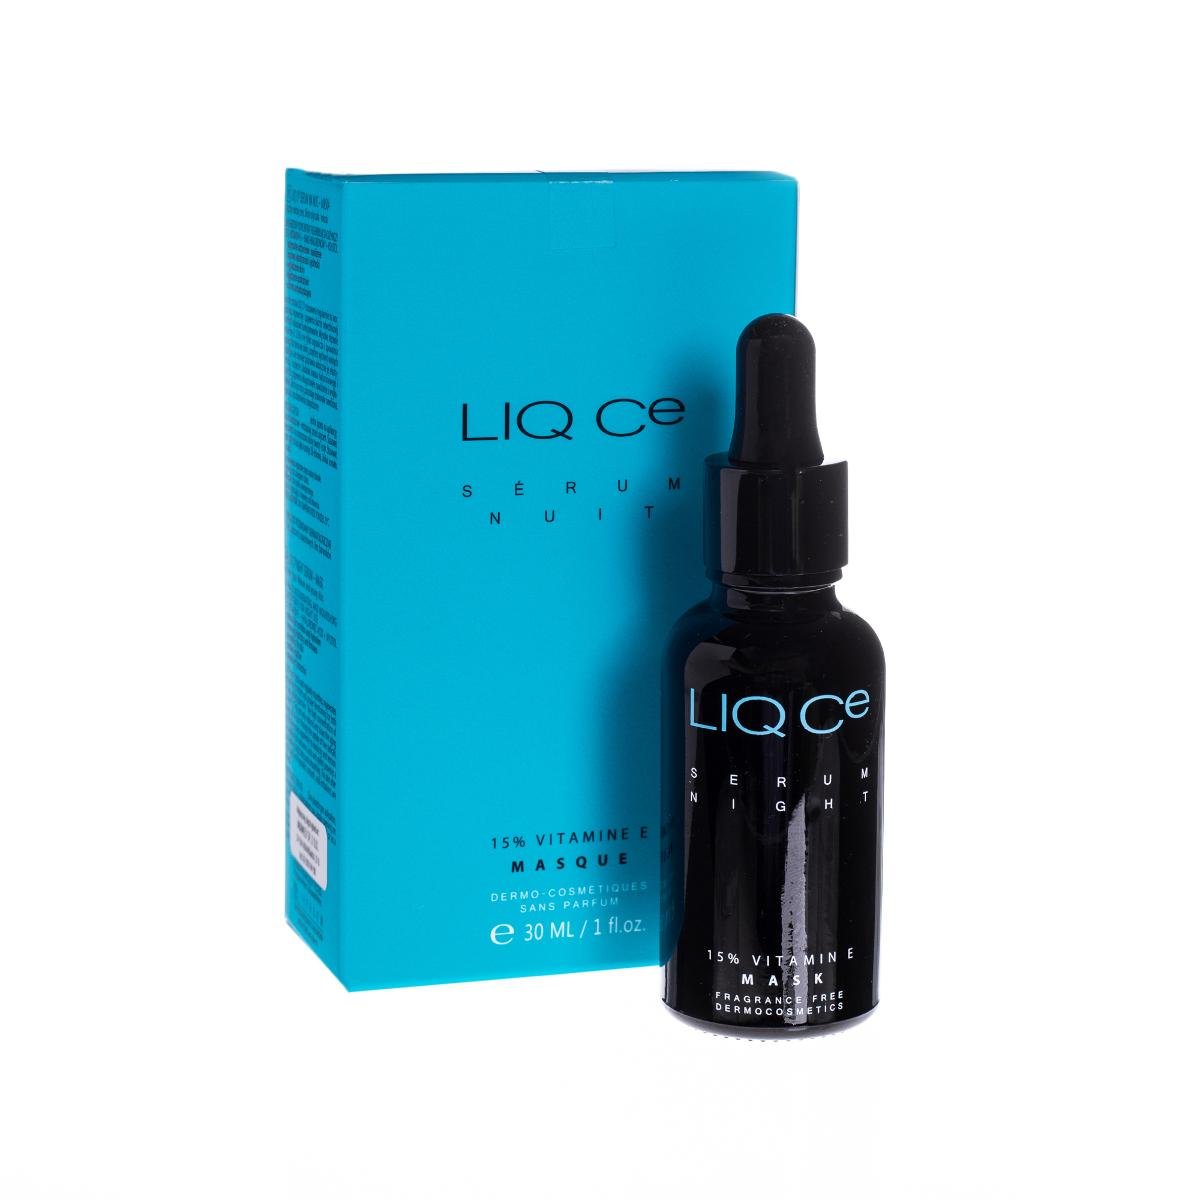 Liq CE Serum Night 15% Vitamin E Mask, dwufazowe serum regenerująco-odżywcze na noc, 30ml 7062047